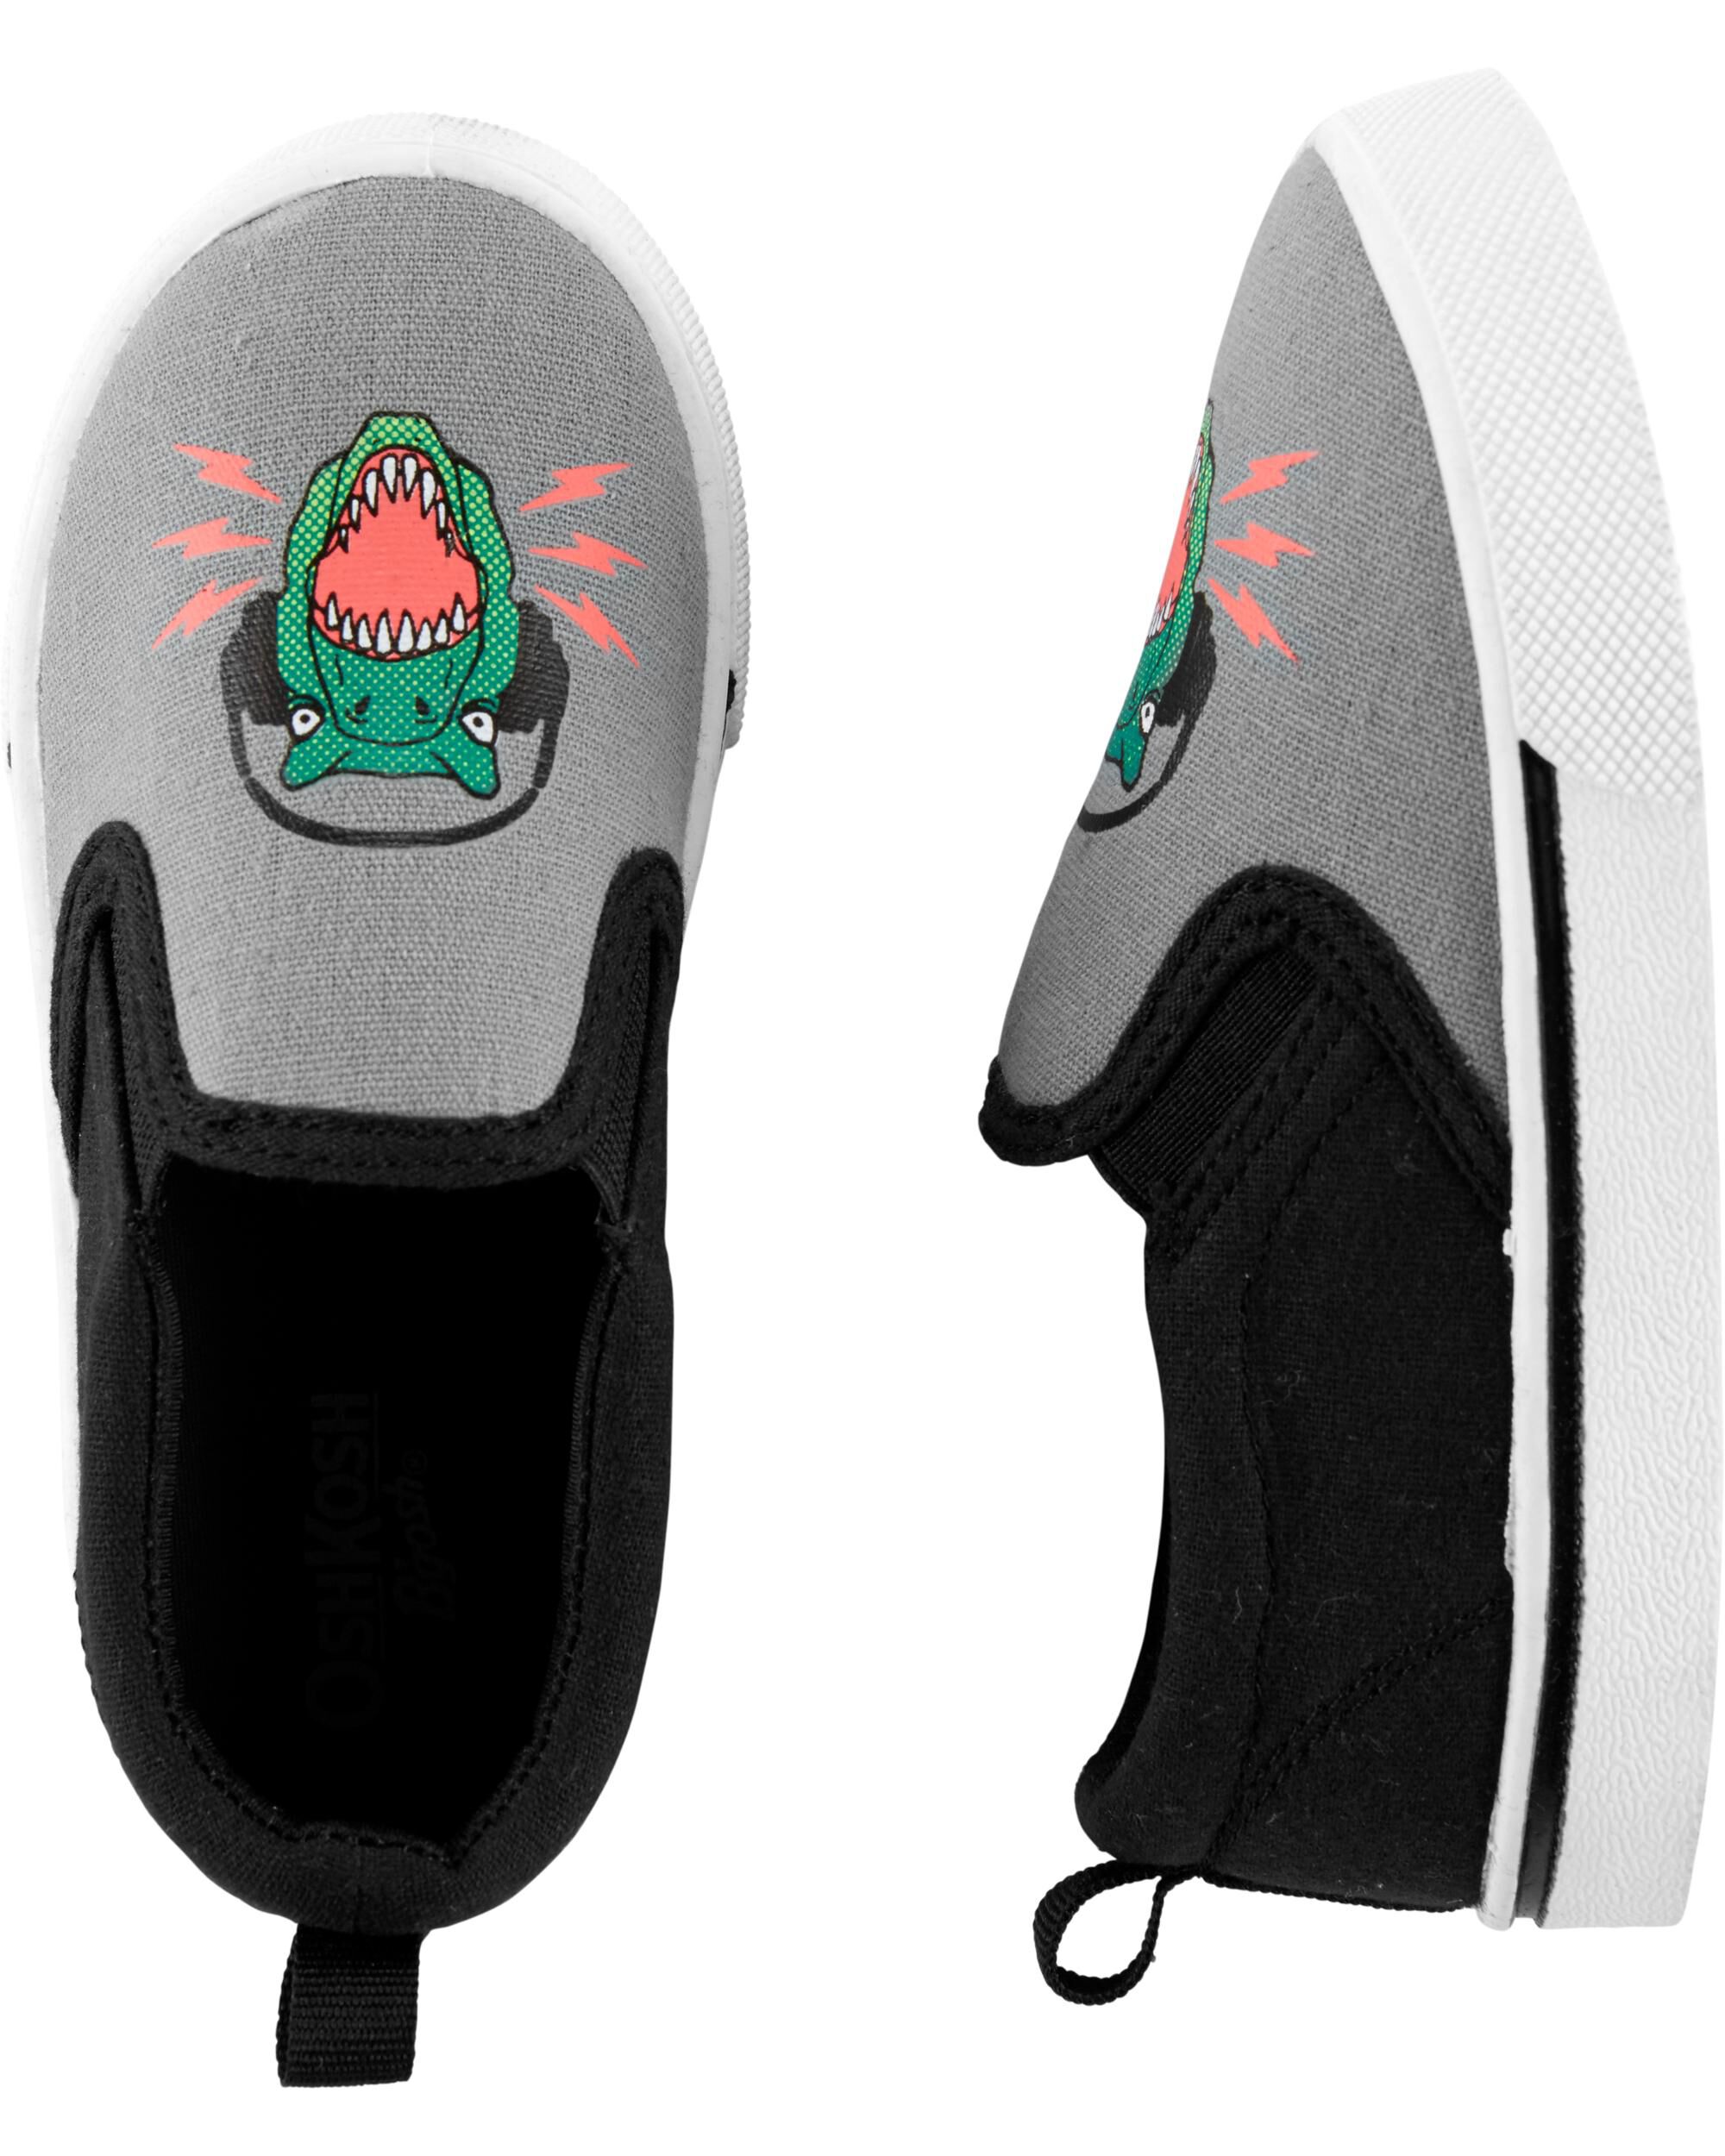 carter's dinosaur slip on shoes